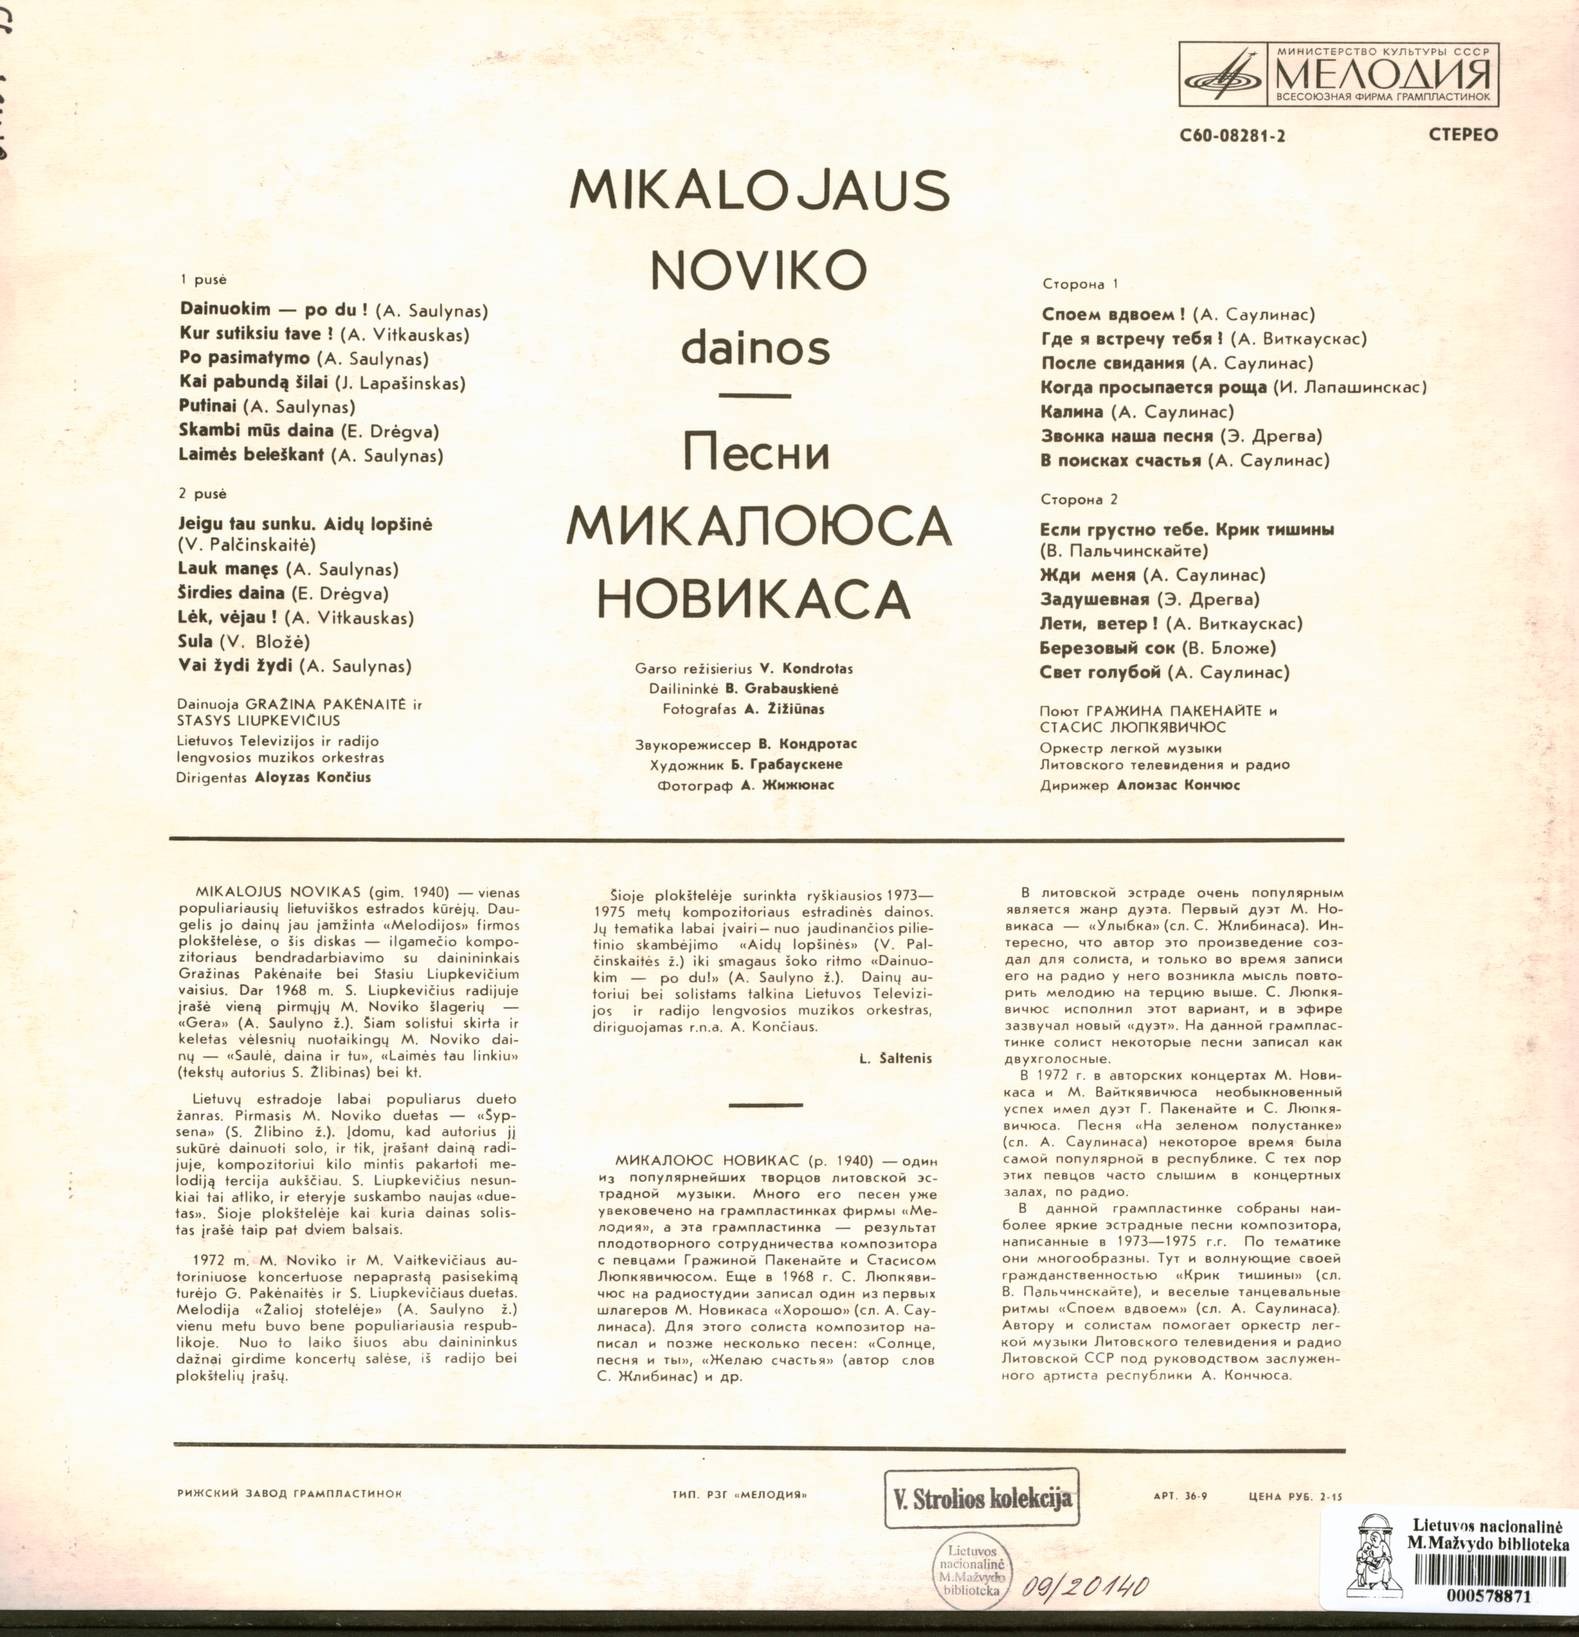 Песни Микалоюса НОВИКАСА (на литовском языке)